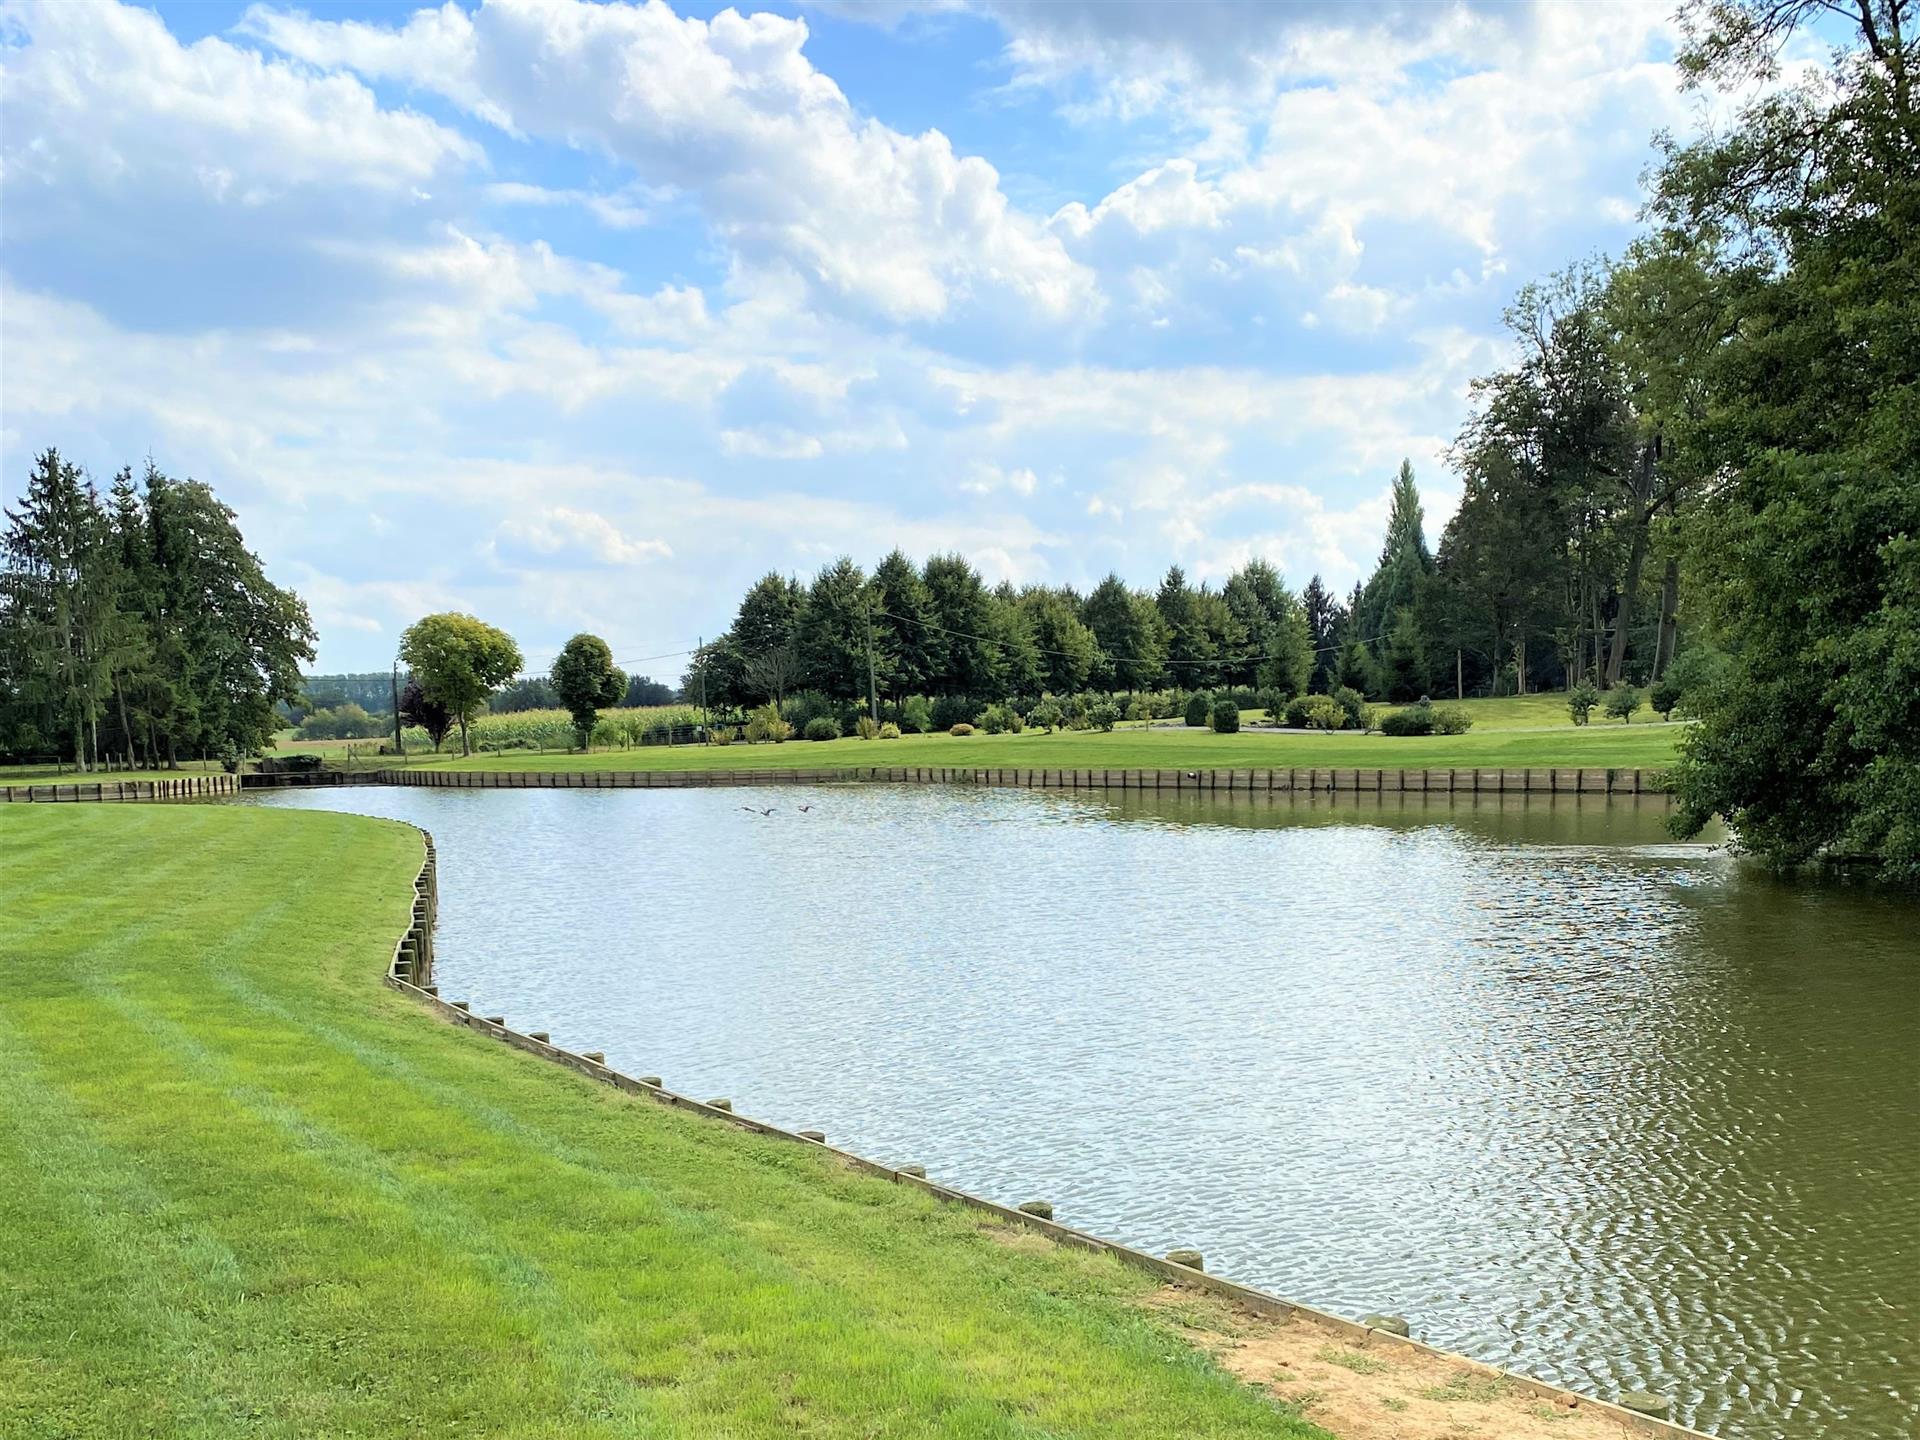 Propriétés sur 3.3 ha avec deux étangs et chalet aménagé viabilsé, deux étangs, parties boisées, un 